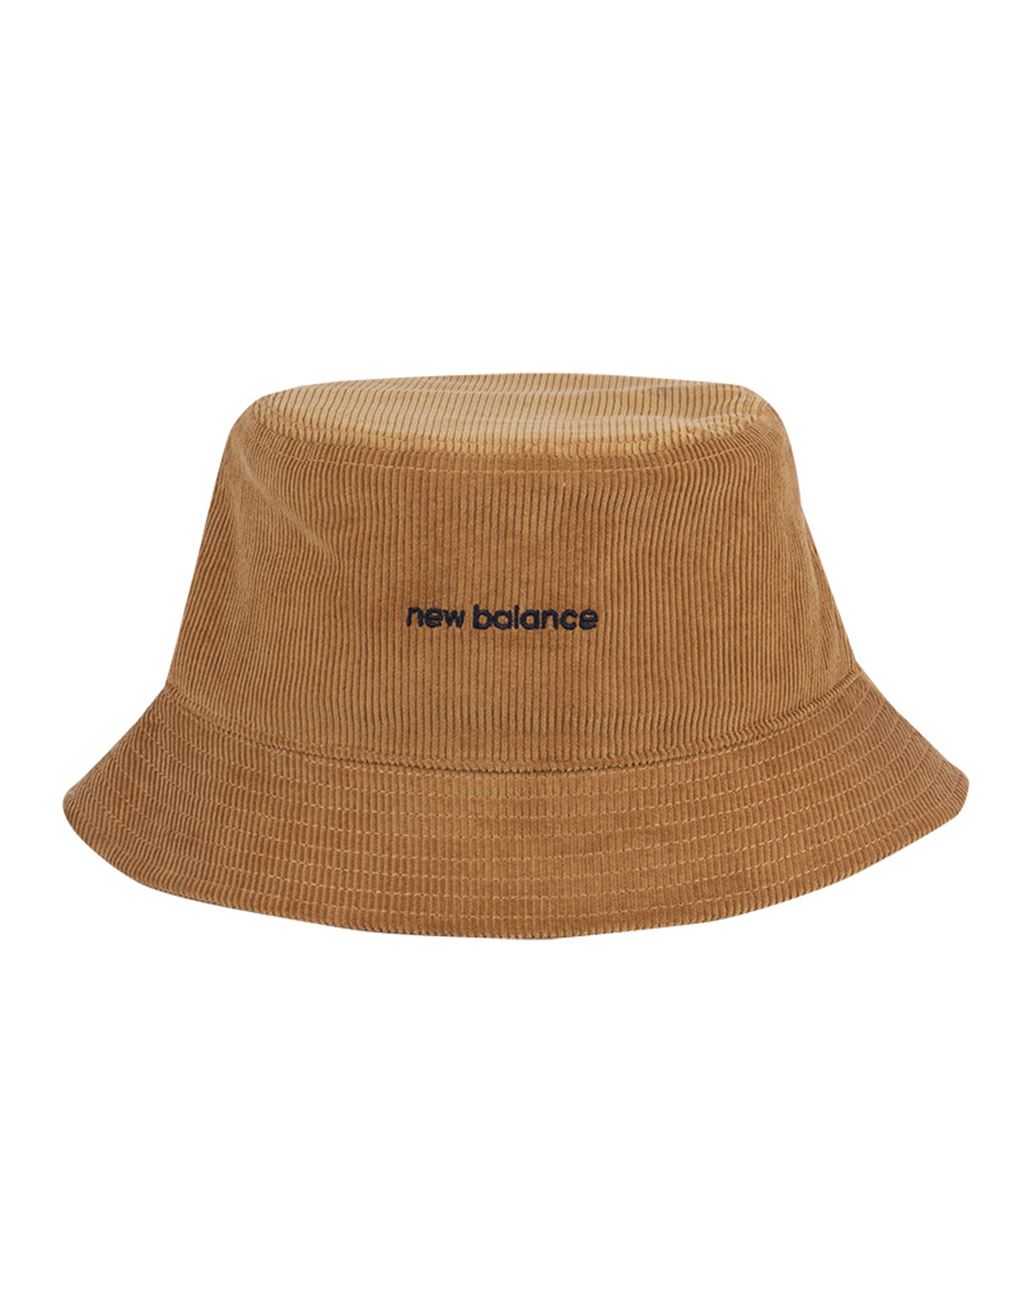 Washed Corduroy Bucket Hat < ΑΞΕΣΟΥΑΡ | New Balance